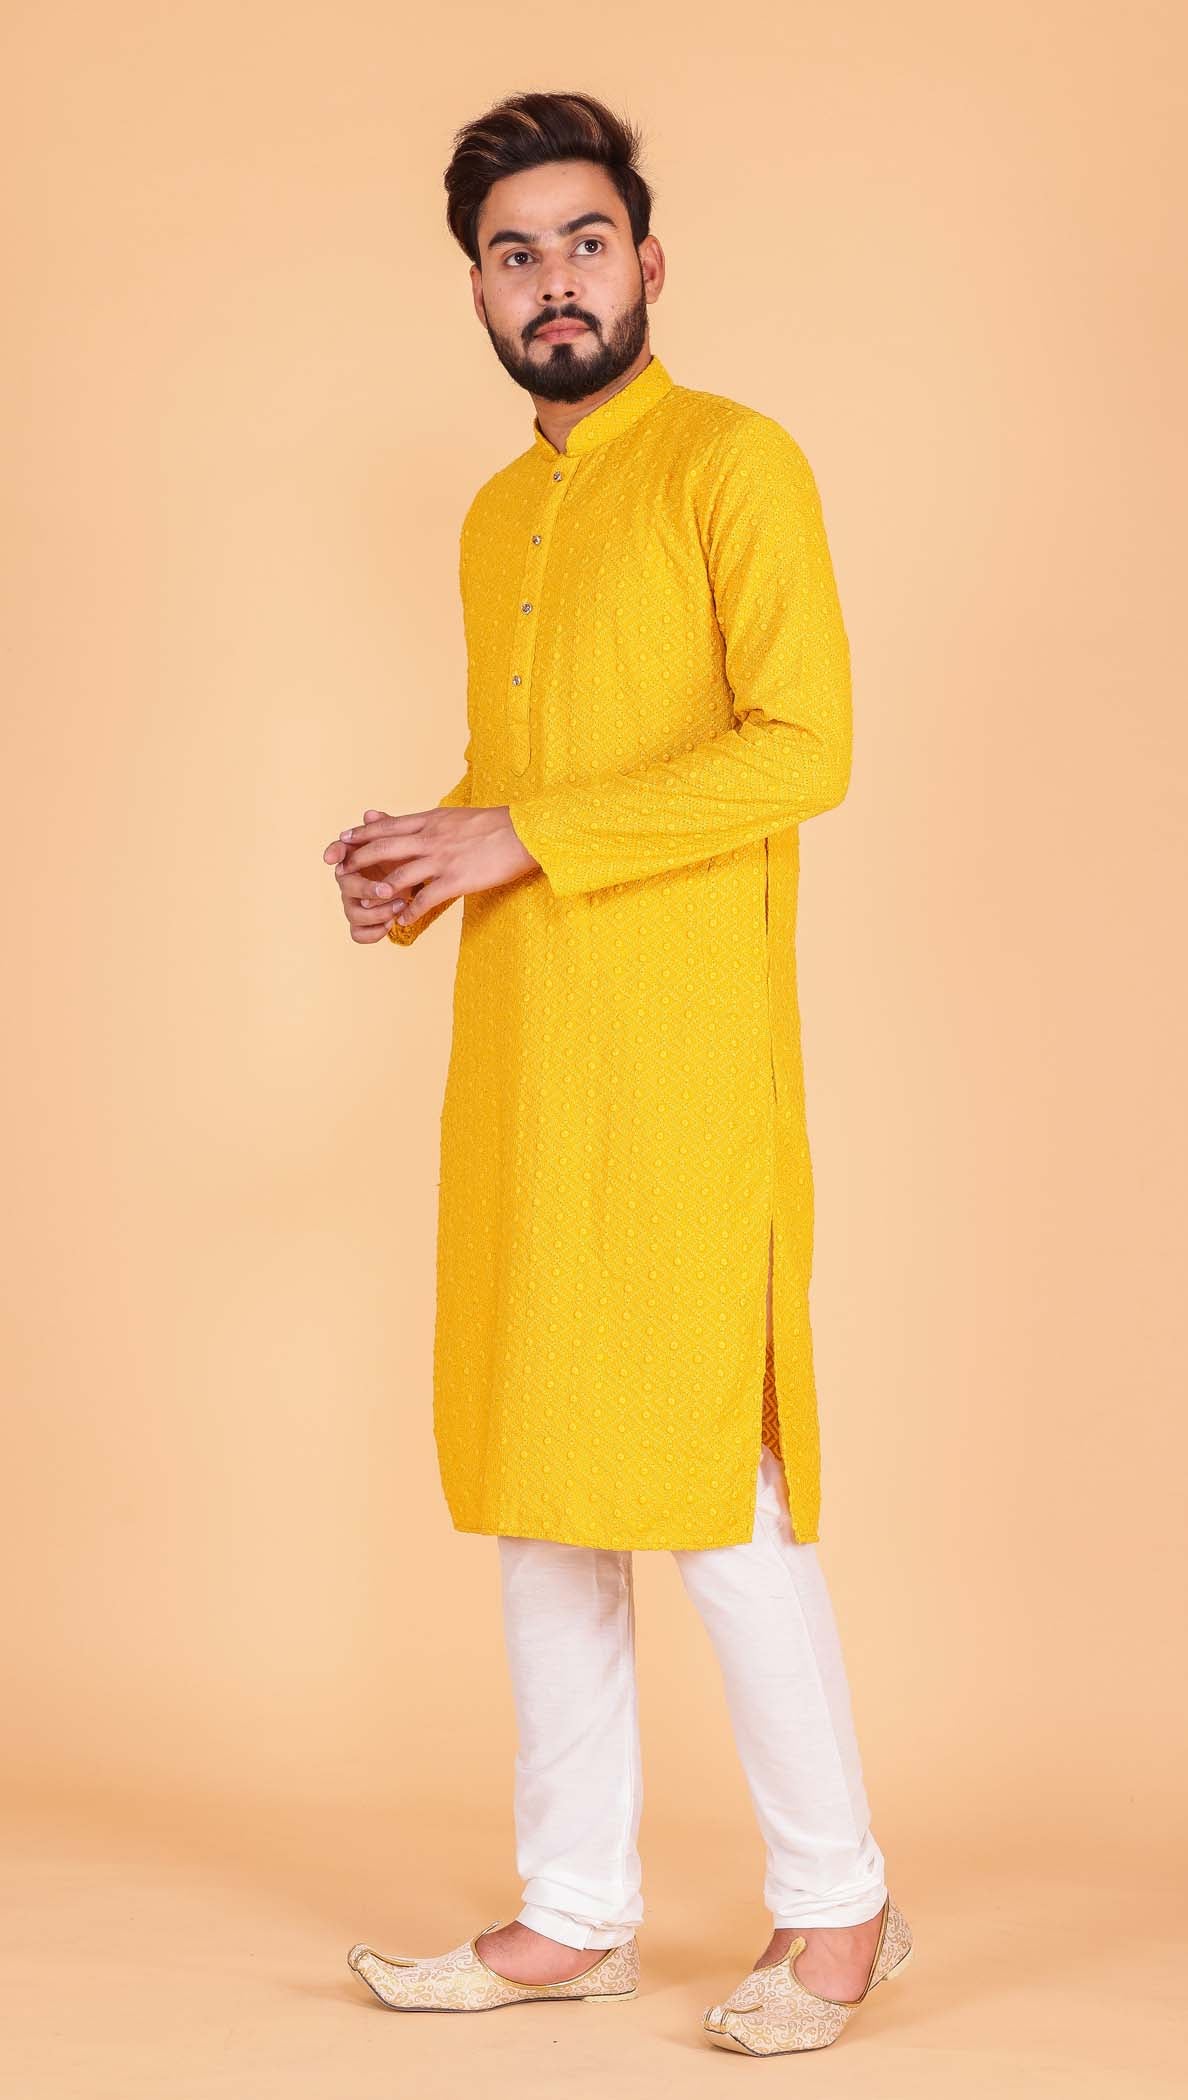 Designer Luckhnowi kurta suit with resham thread work all over- Mustard